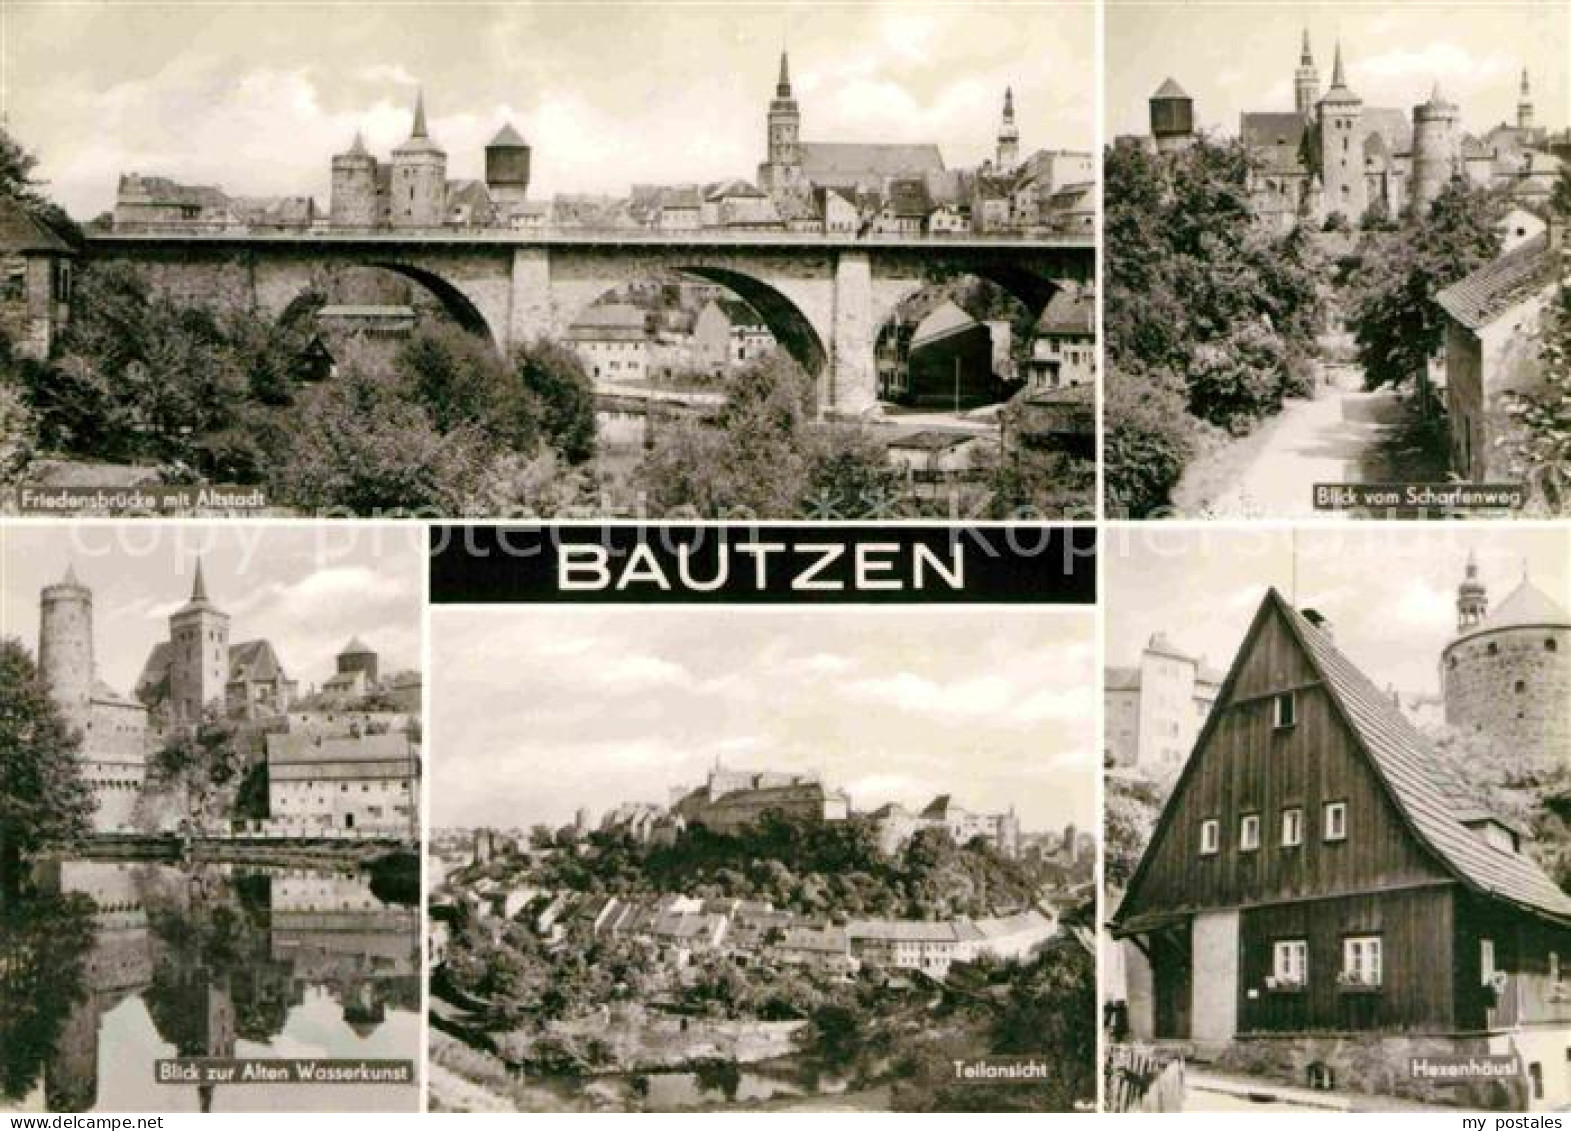 72737982 Bautzen Blick Vom Scharfenweg Hexenhaeusl Wasserkunst Friedensbuercke M - Bautzen